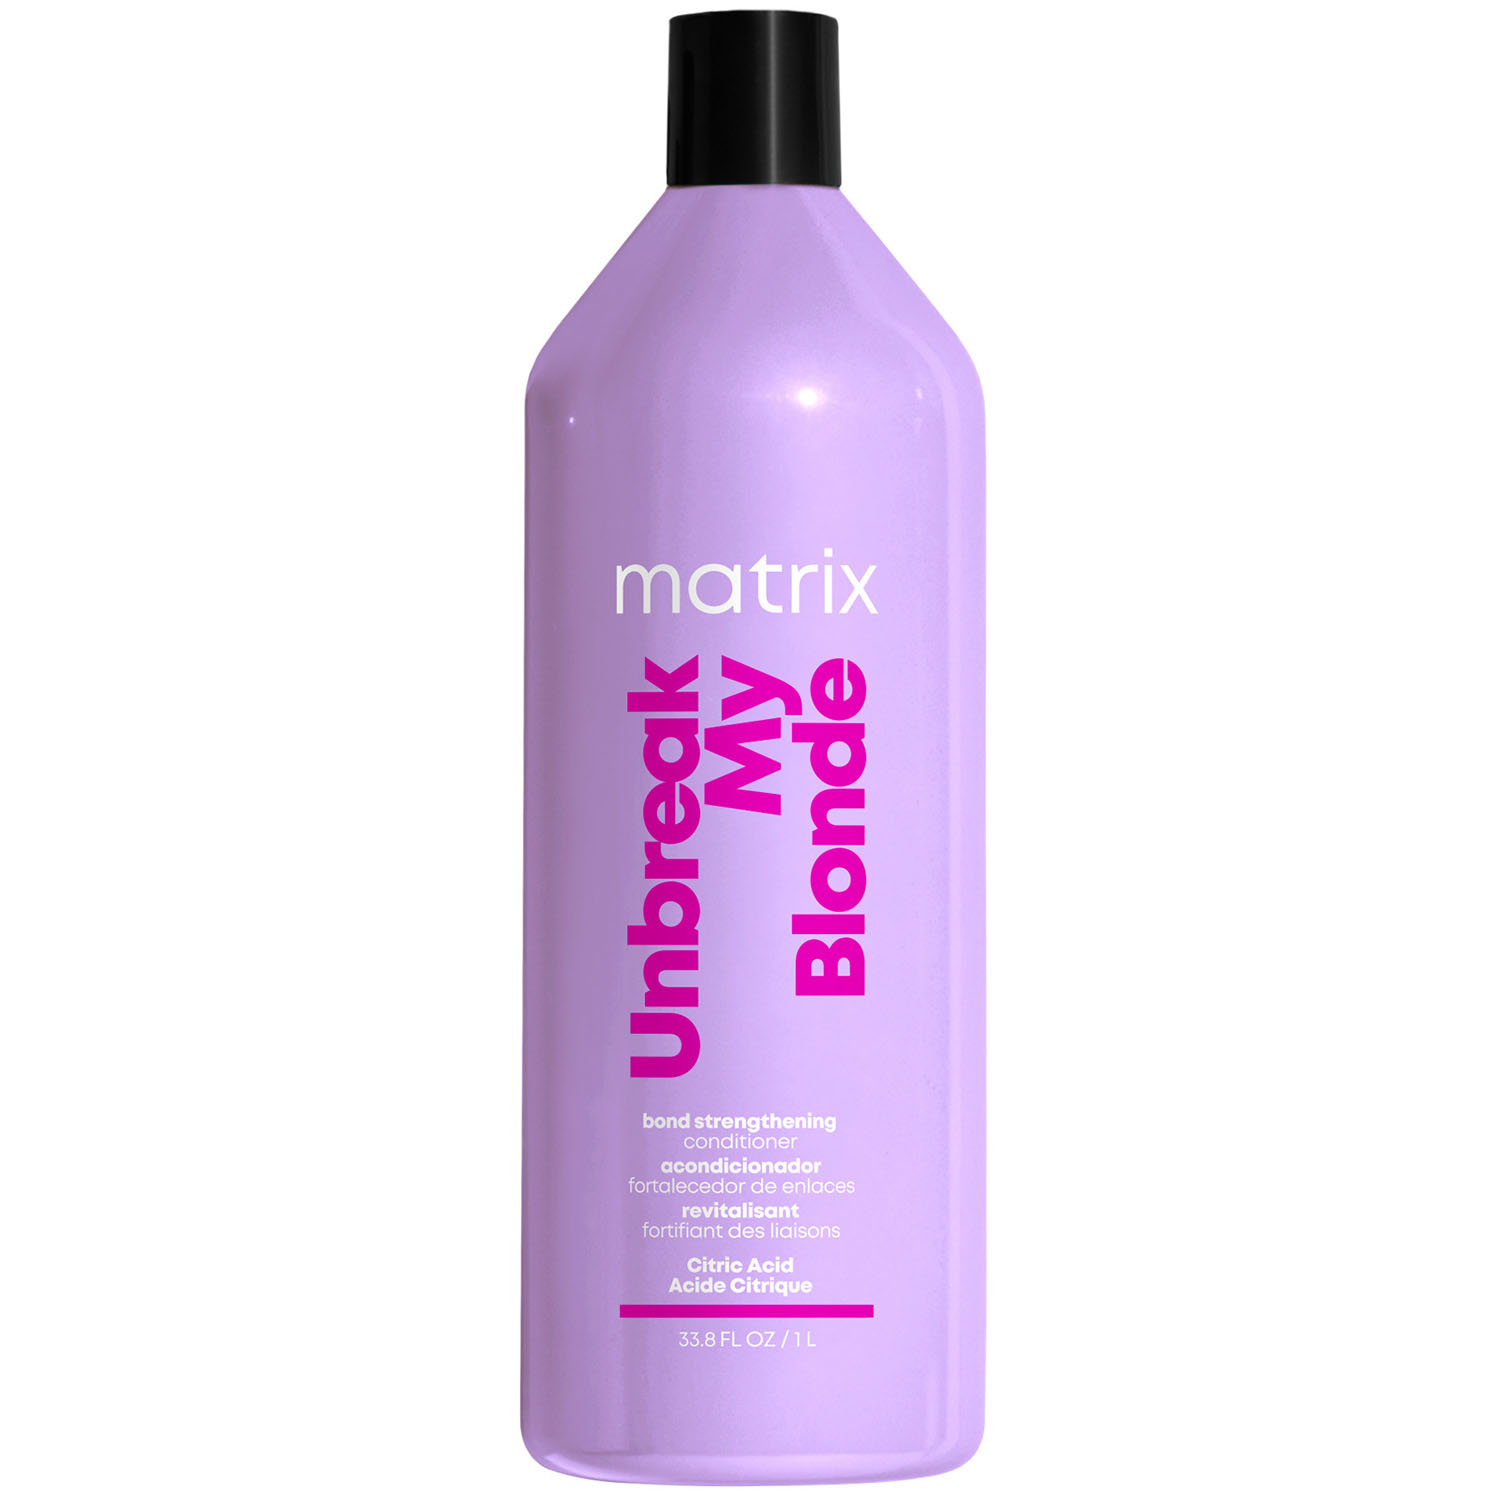 Matrix Укрепляющий кондиционер для осветленных волос, 1000 мл (Matrix, Total results)